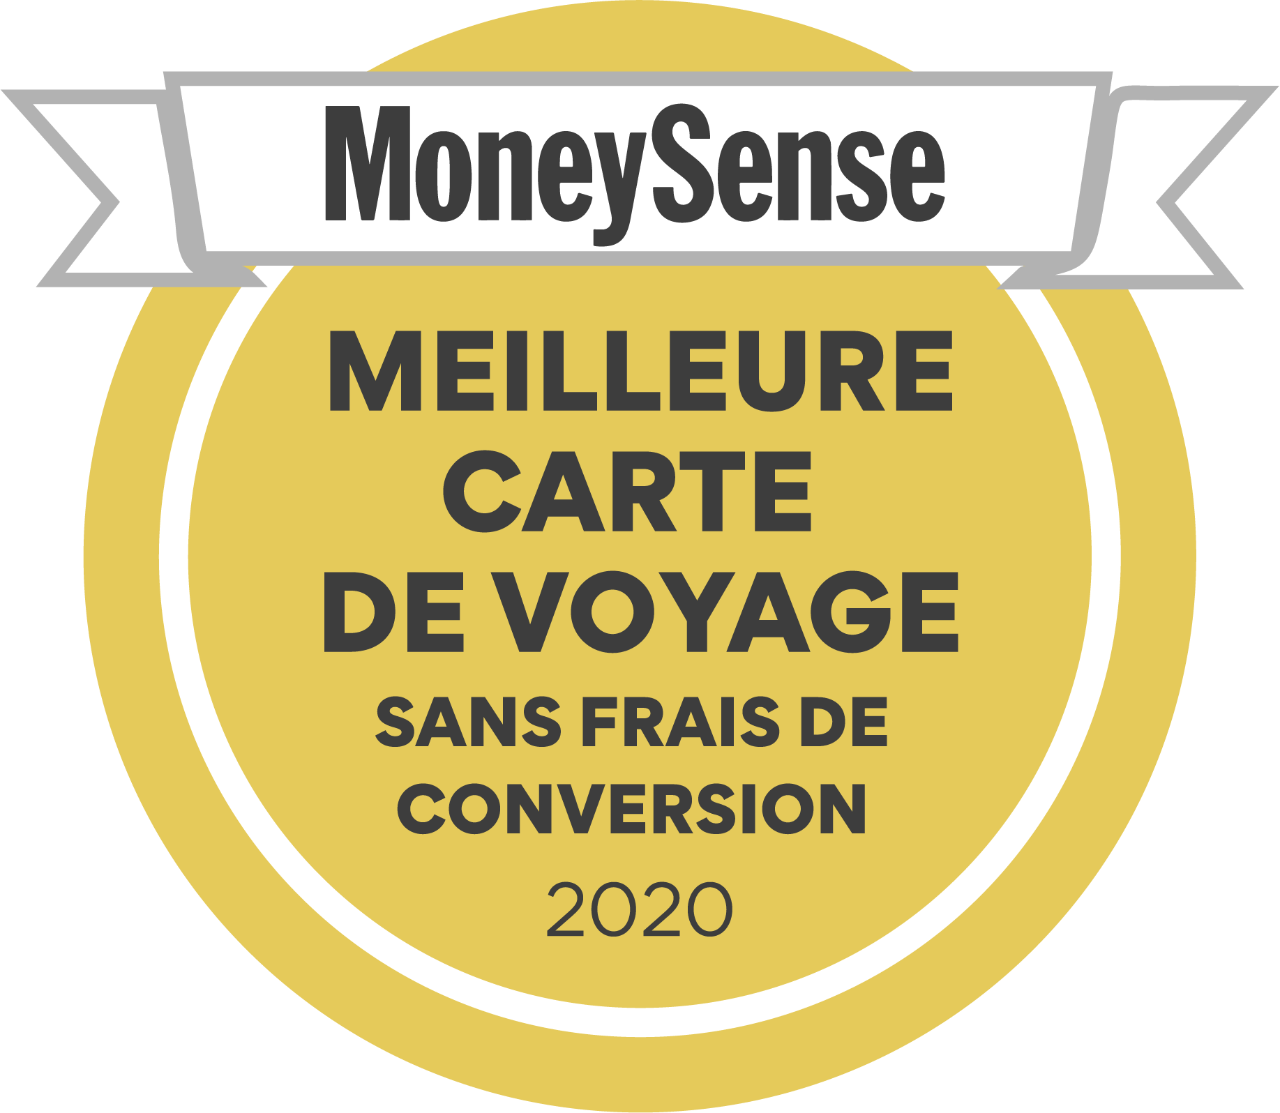  Insigne: Meilleure carte de voyage sans frais de conversion 2020 par MoneySense